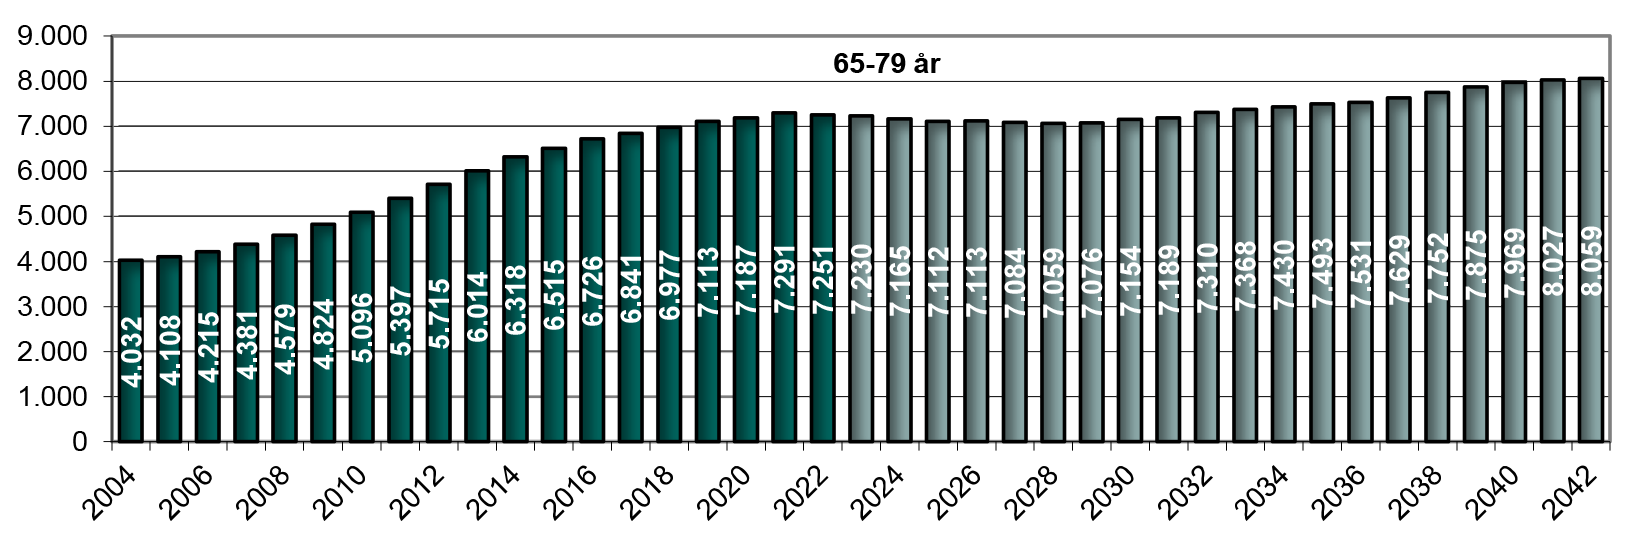 Figur 12. Hidtidig og forventet antal 65-79 årige (1. januar)